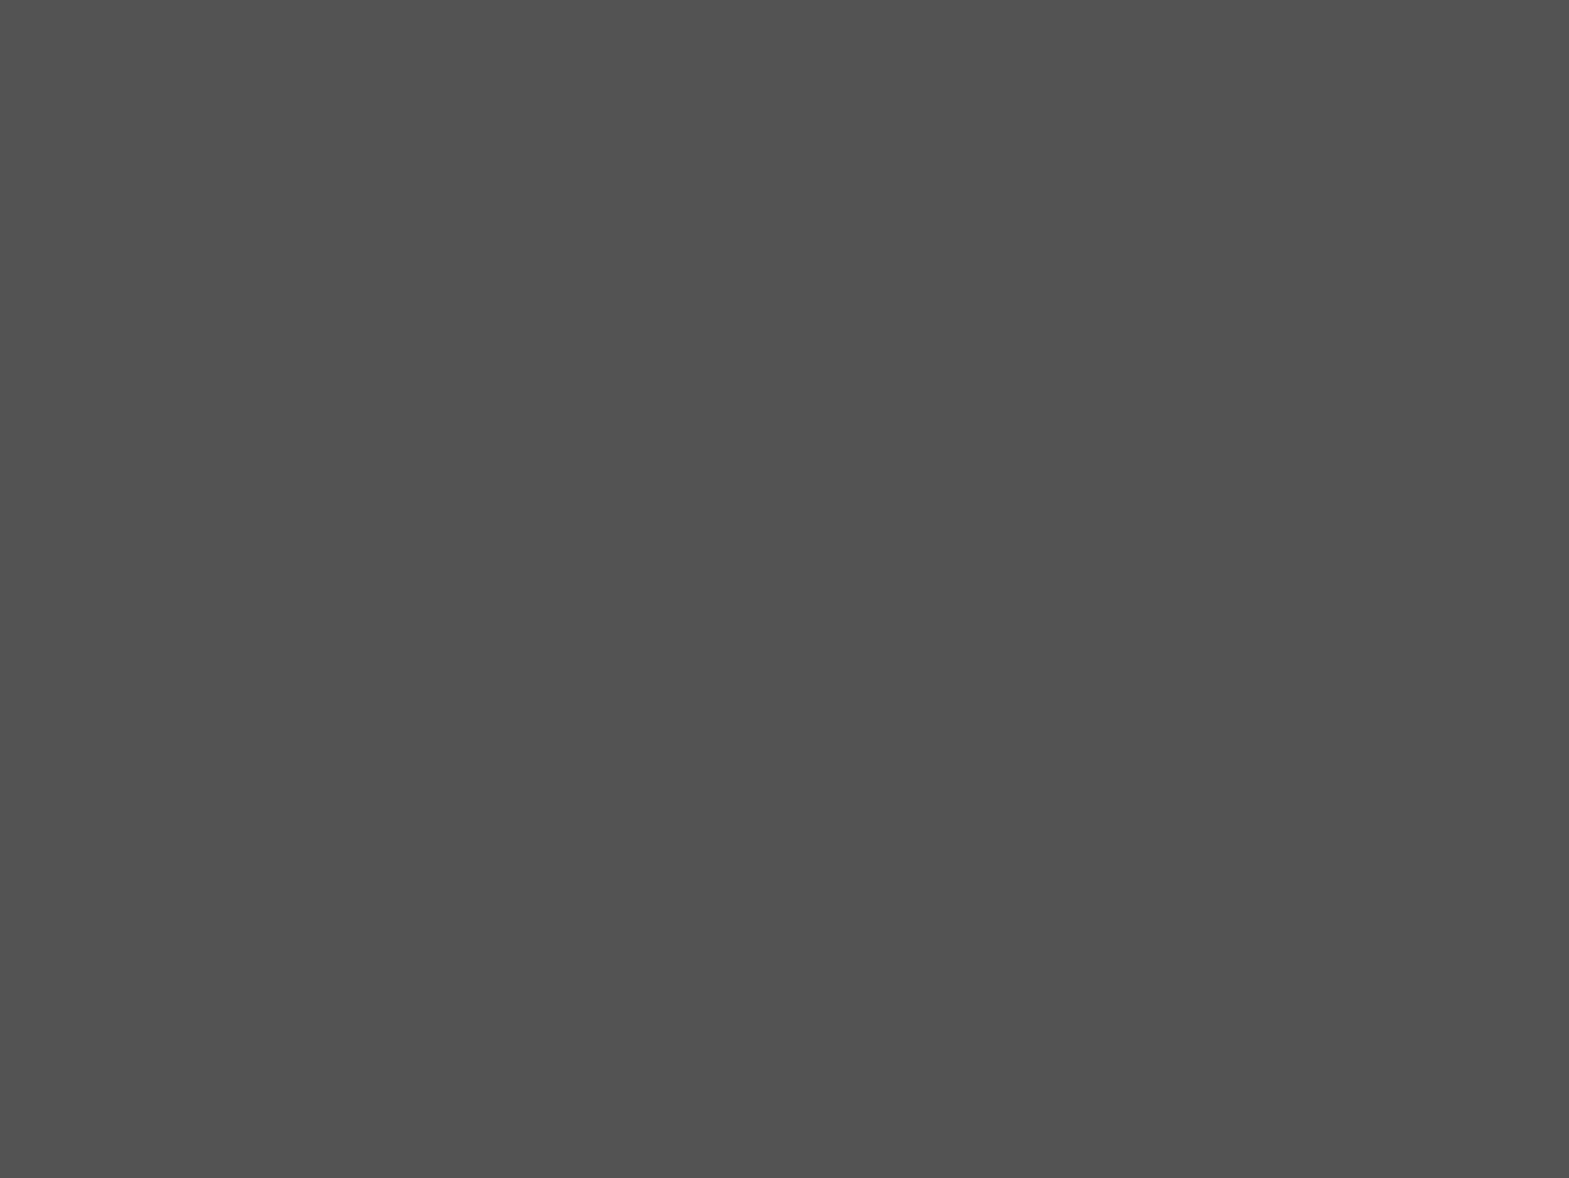 Марина Цветаева с сыном Георгием. Медон, Франция, 1920–1930-е годы. Фотография: Музейное объединение «Музеи наукограда Королев», Королев, Московская область